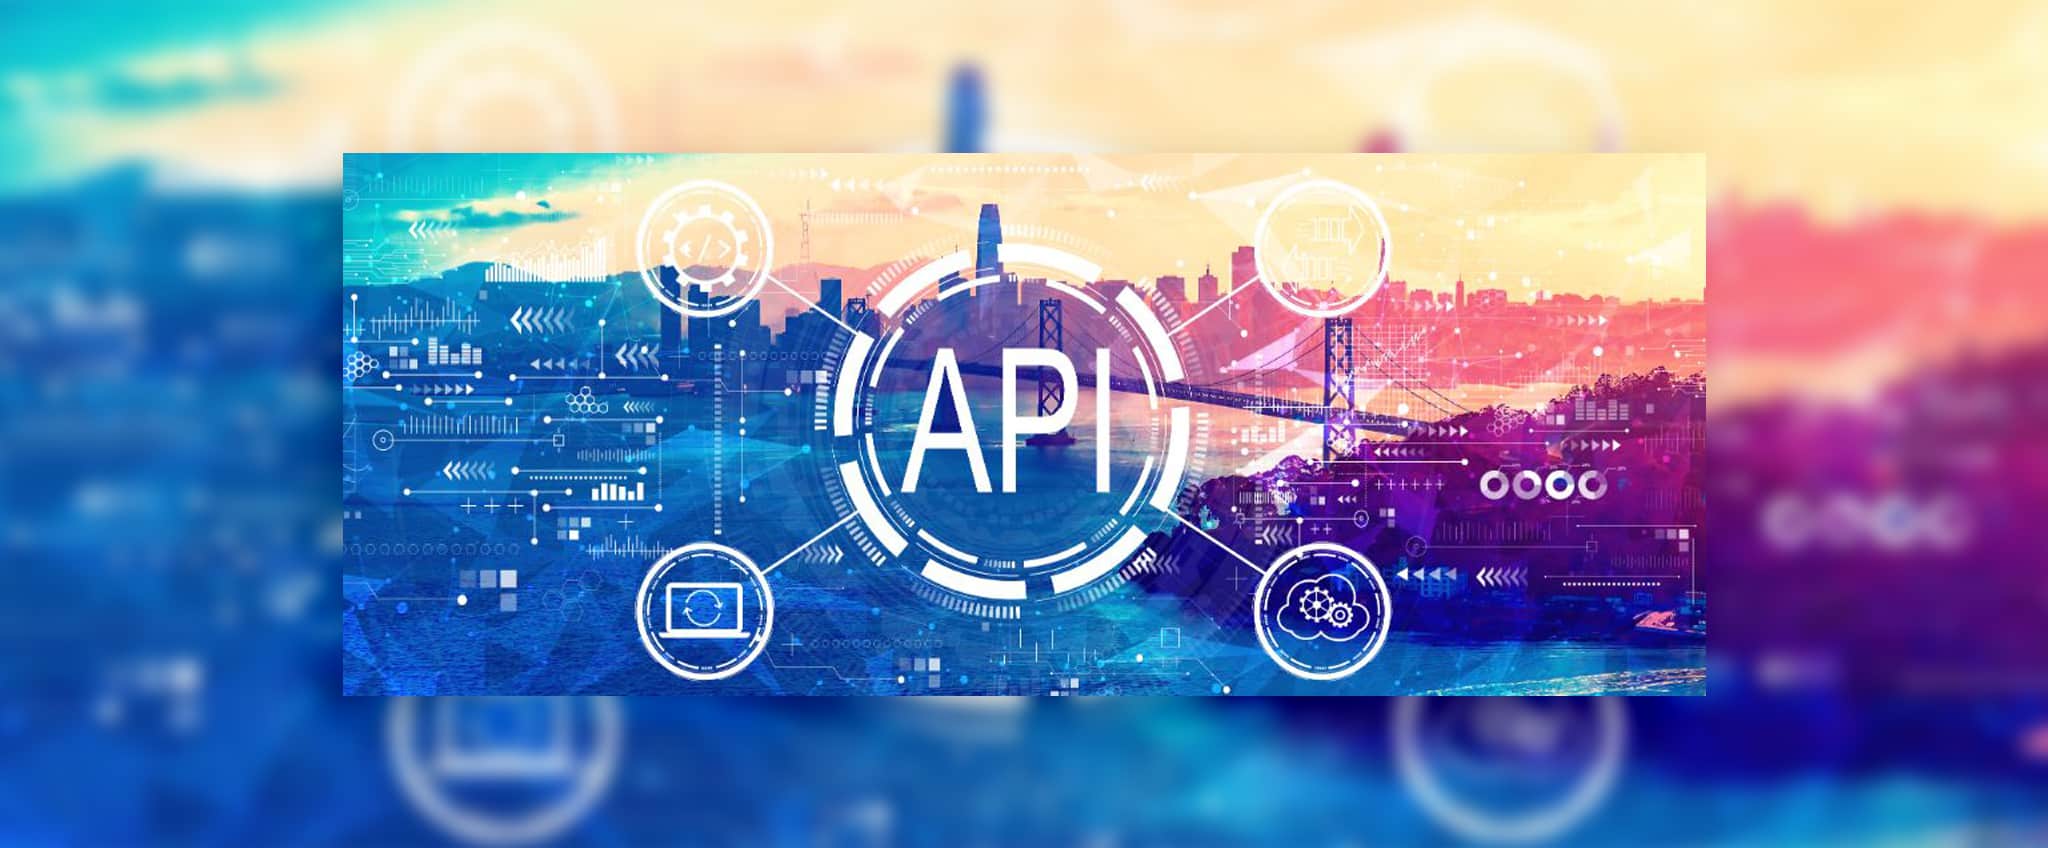  با استفاده از سرویس API الوپیک دیگر نیازی نیست تا آدرس مبدا و مقصد از سوی فروشگاه آنلاین ثبت شود چون با ثبت اطلاعات مبدا و مقصد در وب‌سایت توسط کاربر و در زمان خرید، این اطلاعات به الوپیک منتقل می‌شود.